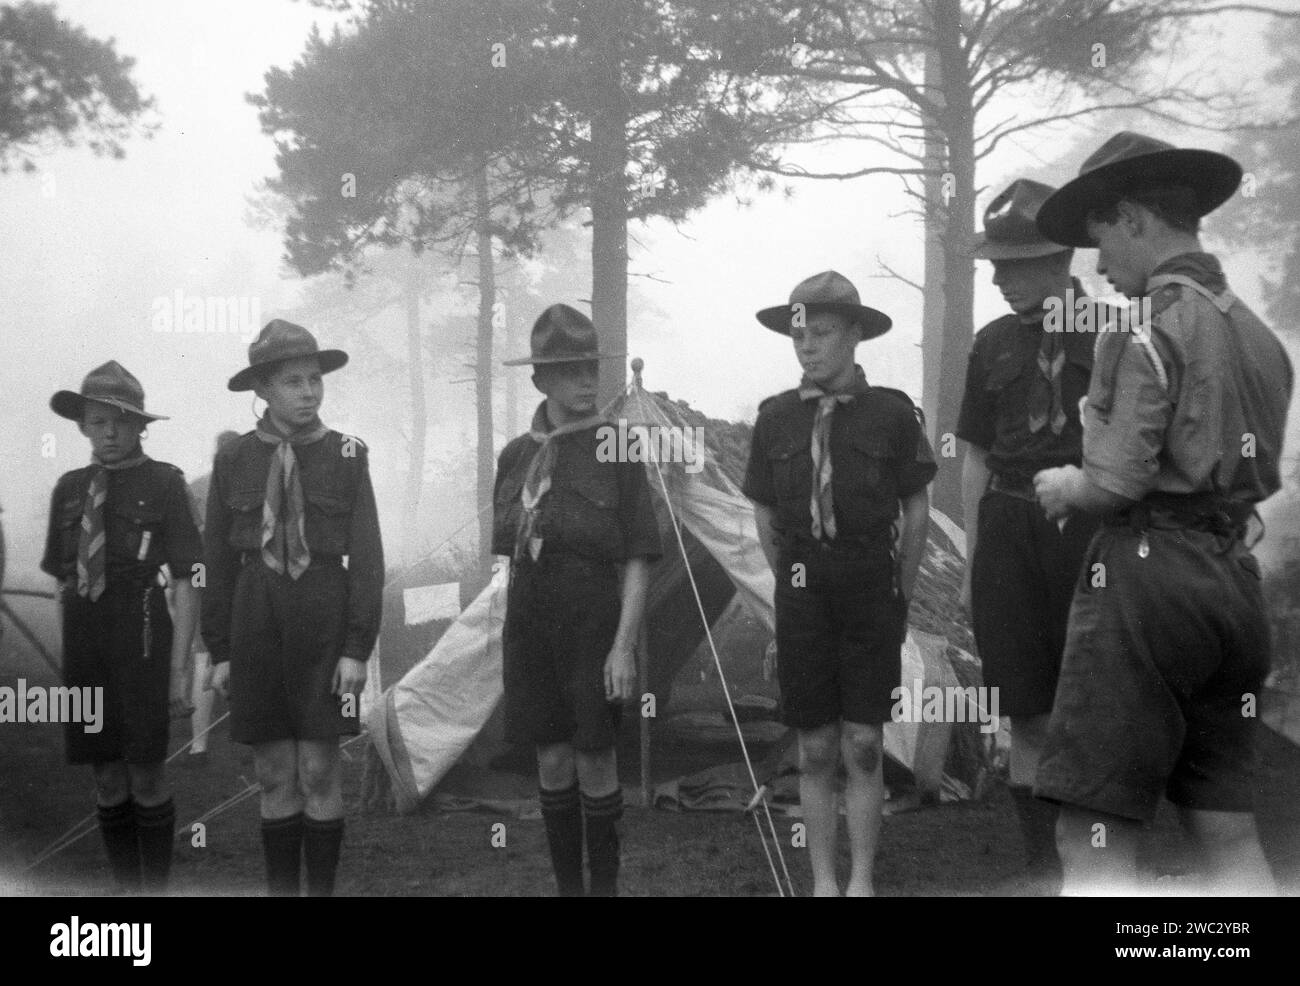 1941, historique, soleil blanc et un matin brumeux tôt dans un camp de scouts à Broadstone, Poole, Dorset, avec une inspection de troupe de courlis ayant lieu. Brownsea Island, également près de Poole, était en 1907, l'endroit où le fondateur du mouvement scout, officier de l'armée britannique, Robert Baden-Powell, a créé son camp d'essai pour les garçons et l'année suivante a publié son célèbre livre, Scouting for Boys. Deux ans plus tard, avec sa sœur, Agnès, Baden-Powell fonde les Guides. Banque D'Images